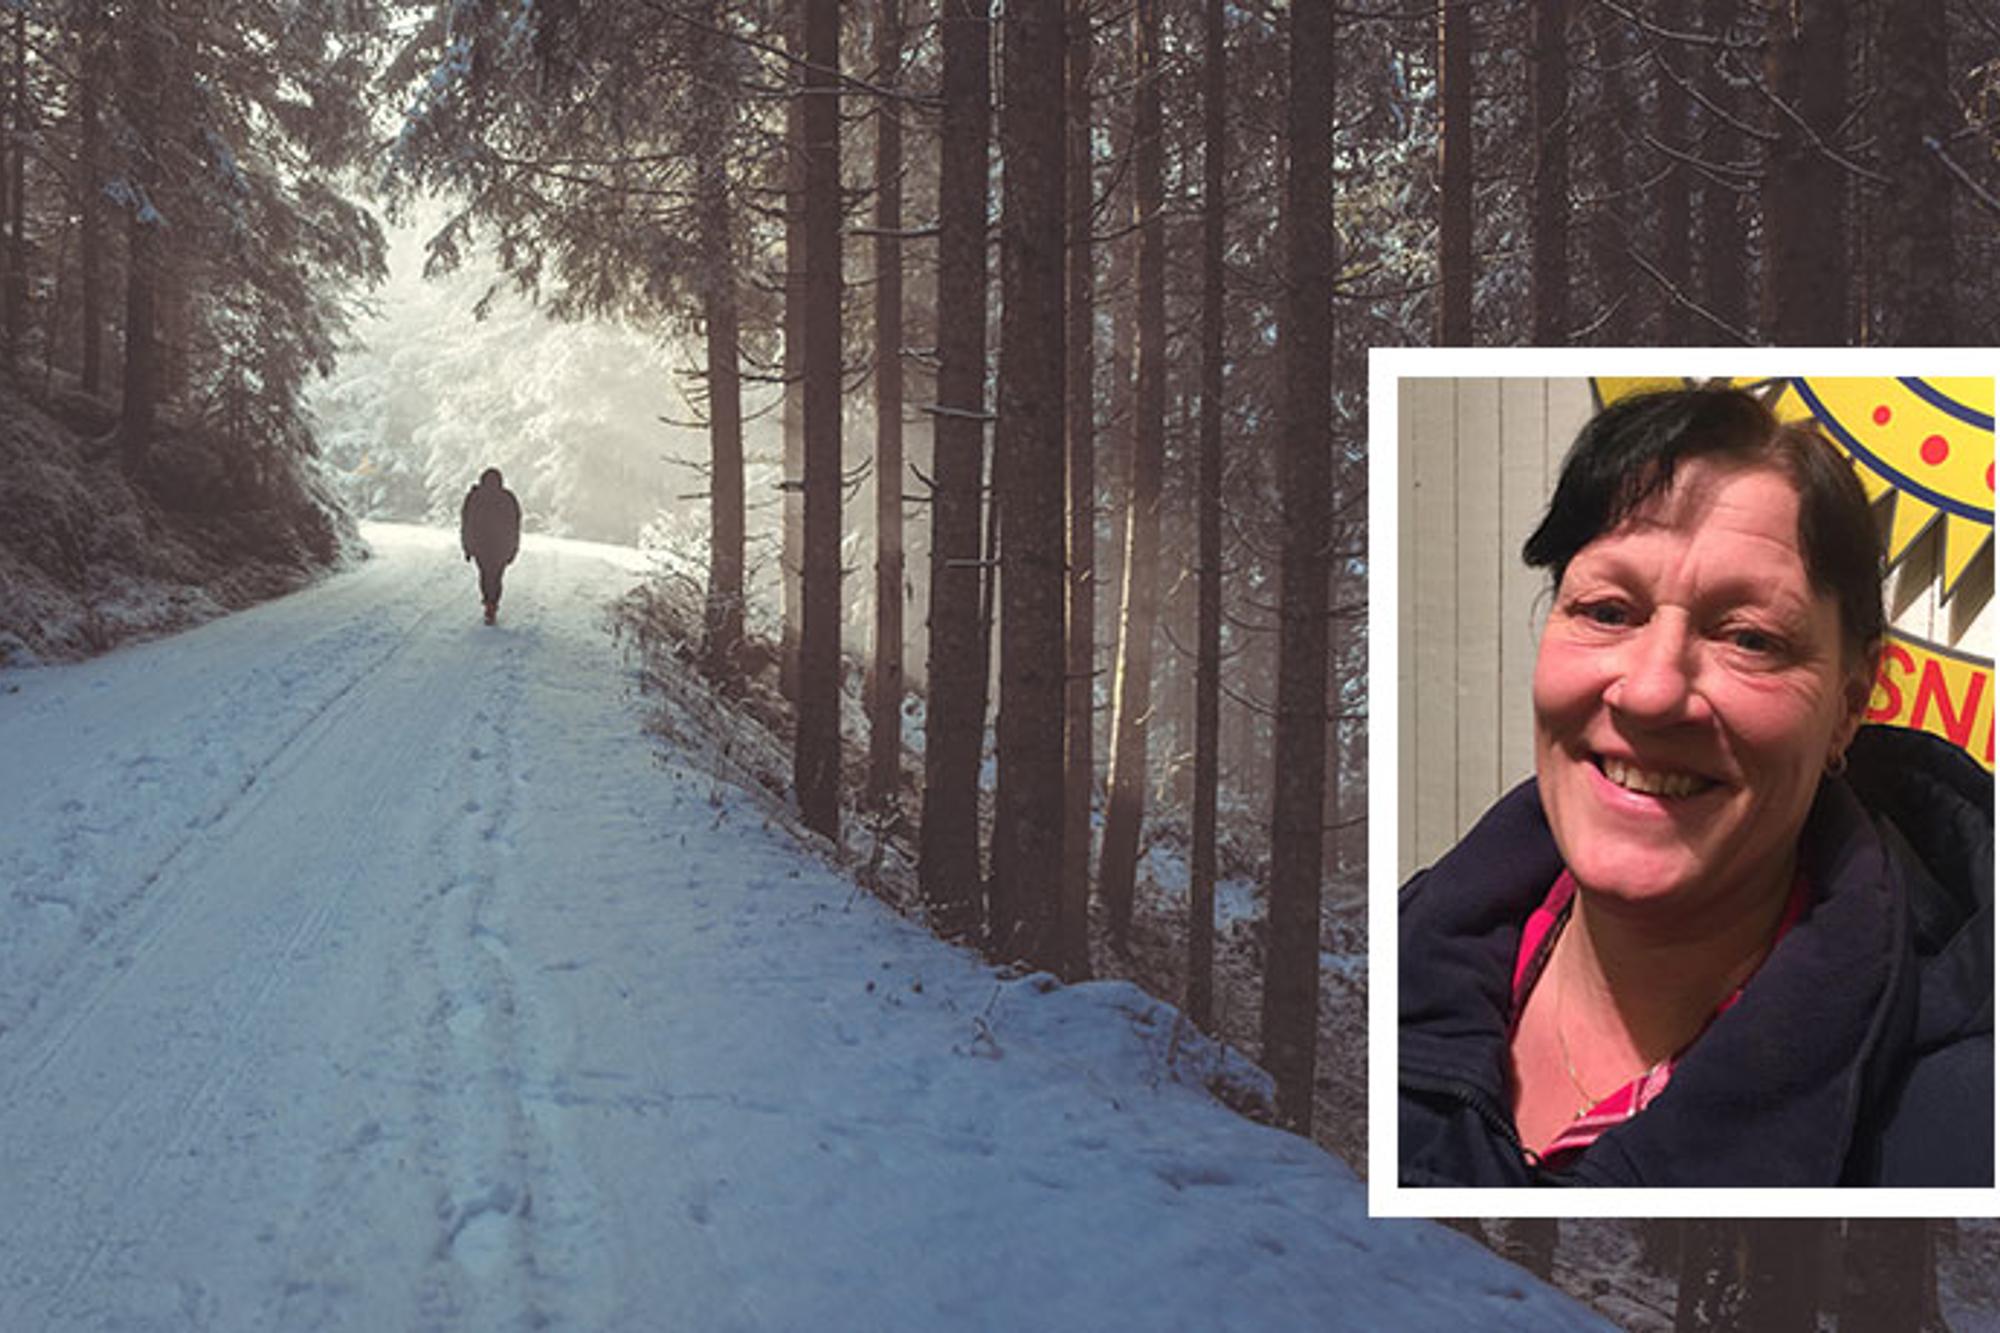 Till vänster: Ryggtavlan på en person som är ute och går på en snötäckt stig i skogen. Till höger: Ann Sahlström.